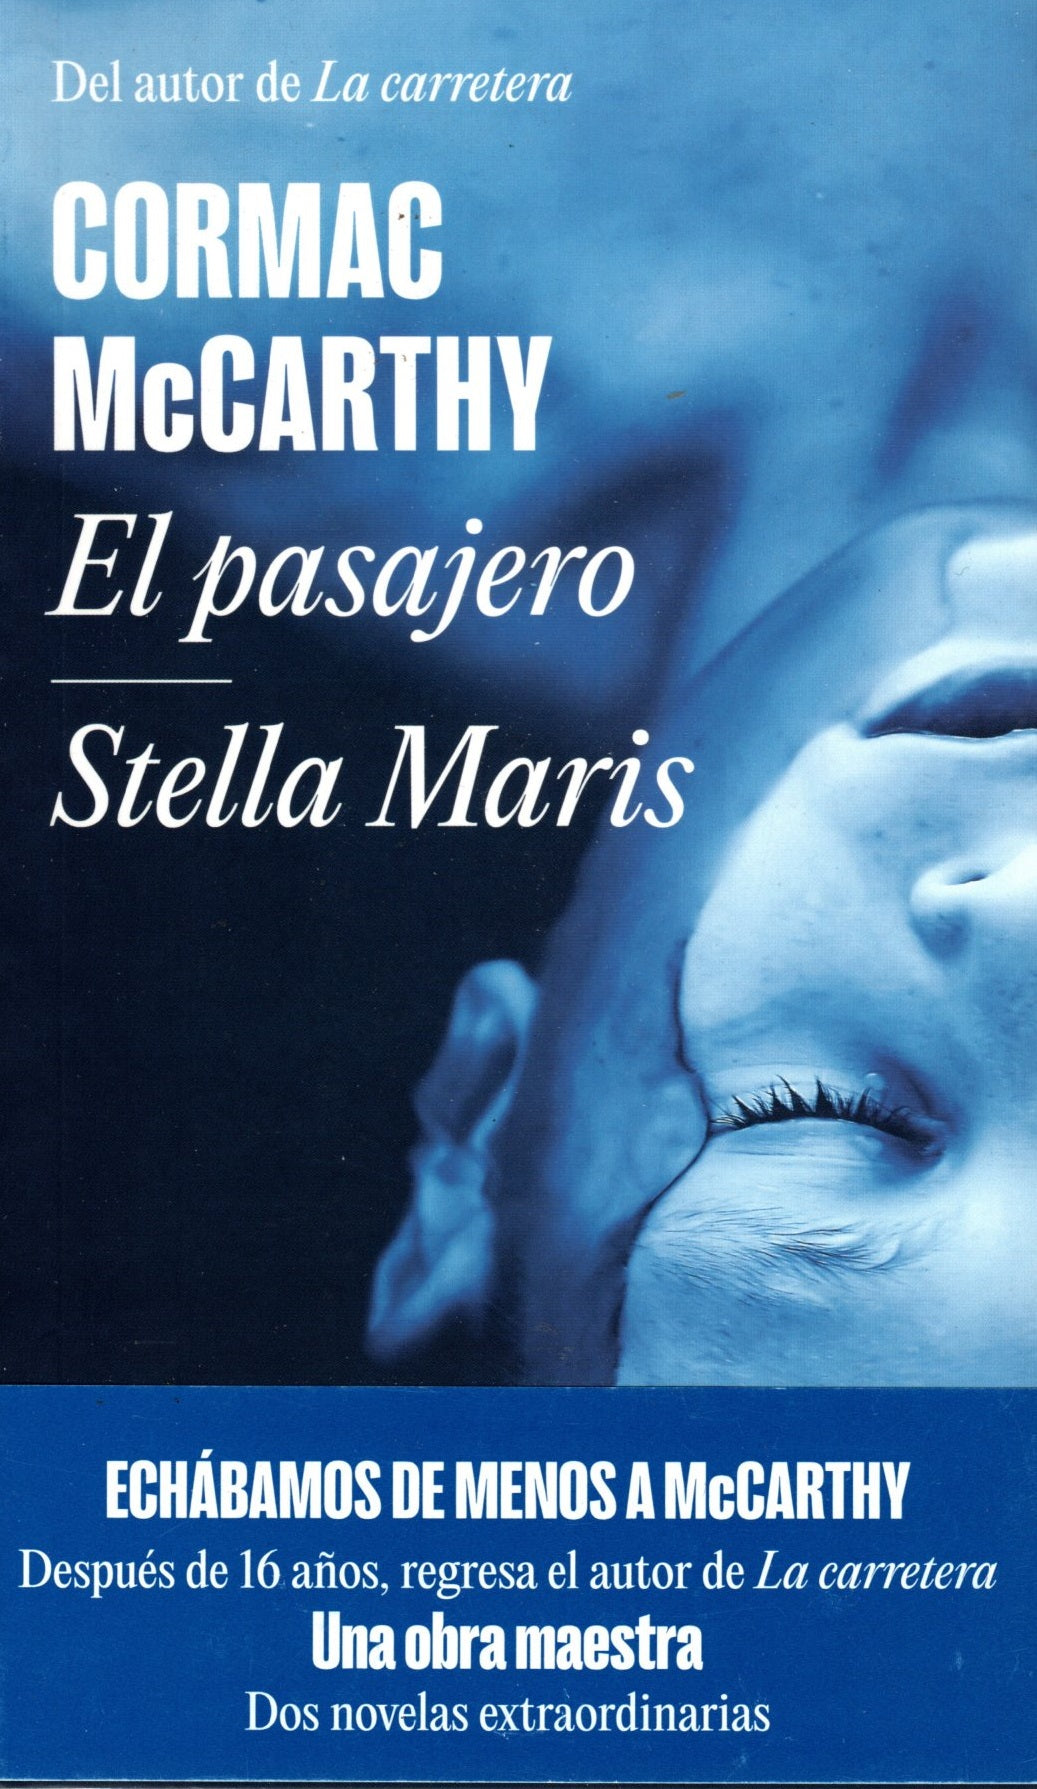 Libro Cormac McCarthy - El Pasajero / Stella Maris